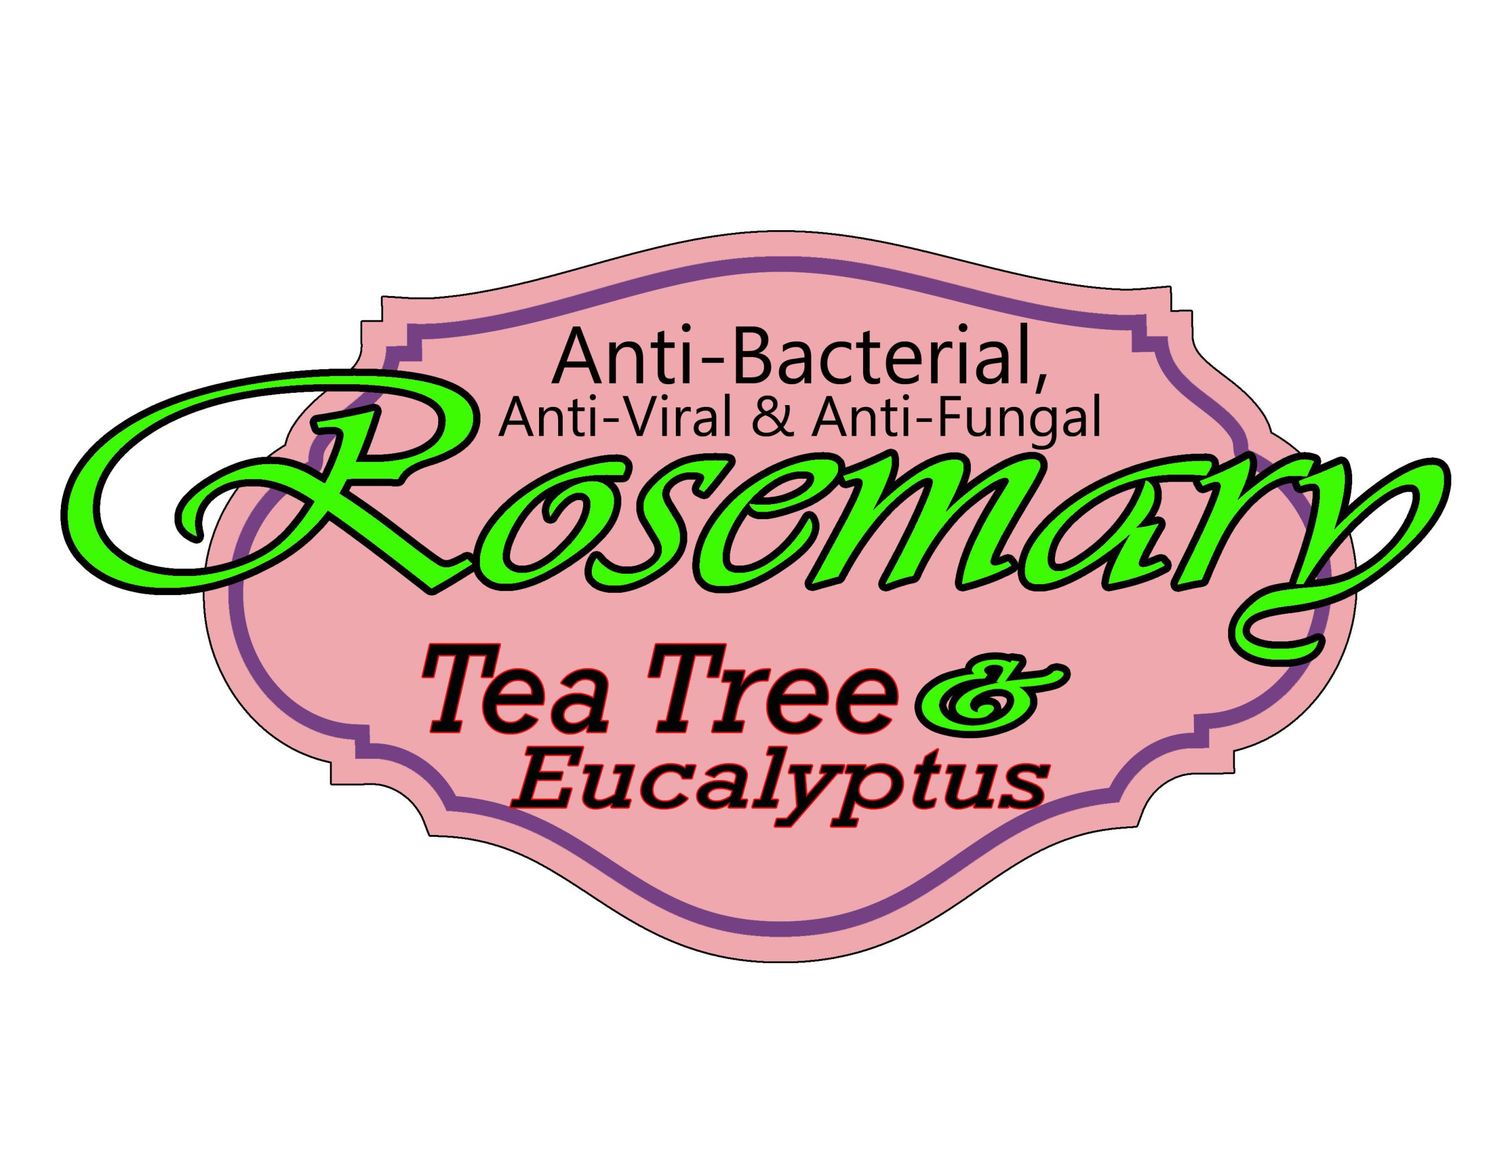 Rosemary, Tea Tree, & Eucalyptus